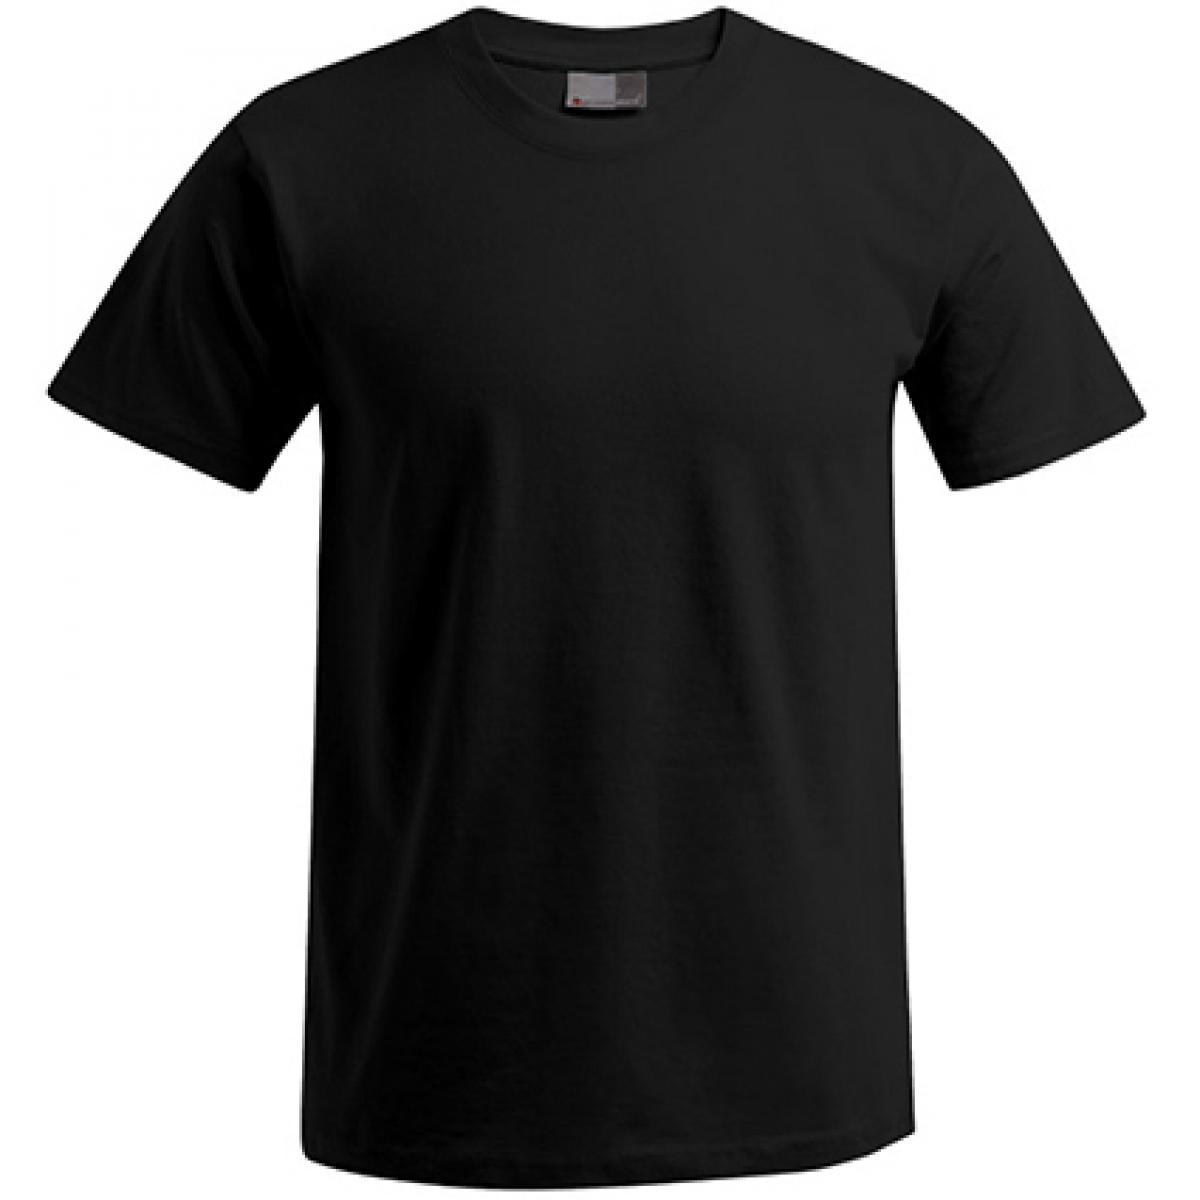 Hersteller: Promodoro Herstellernummer: 3000/3099 Artikelbezeichnung: Men´s Premium Herren T-Shirt - bis 5XL Farbe: Black